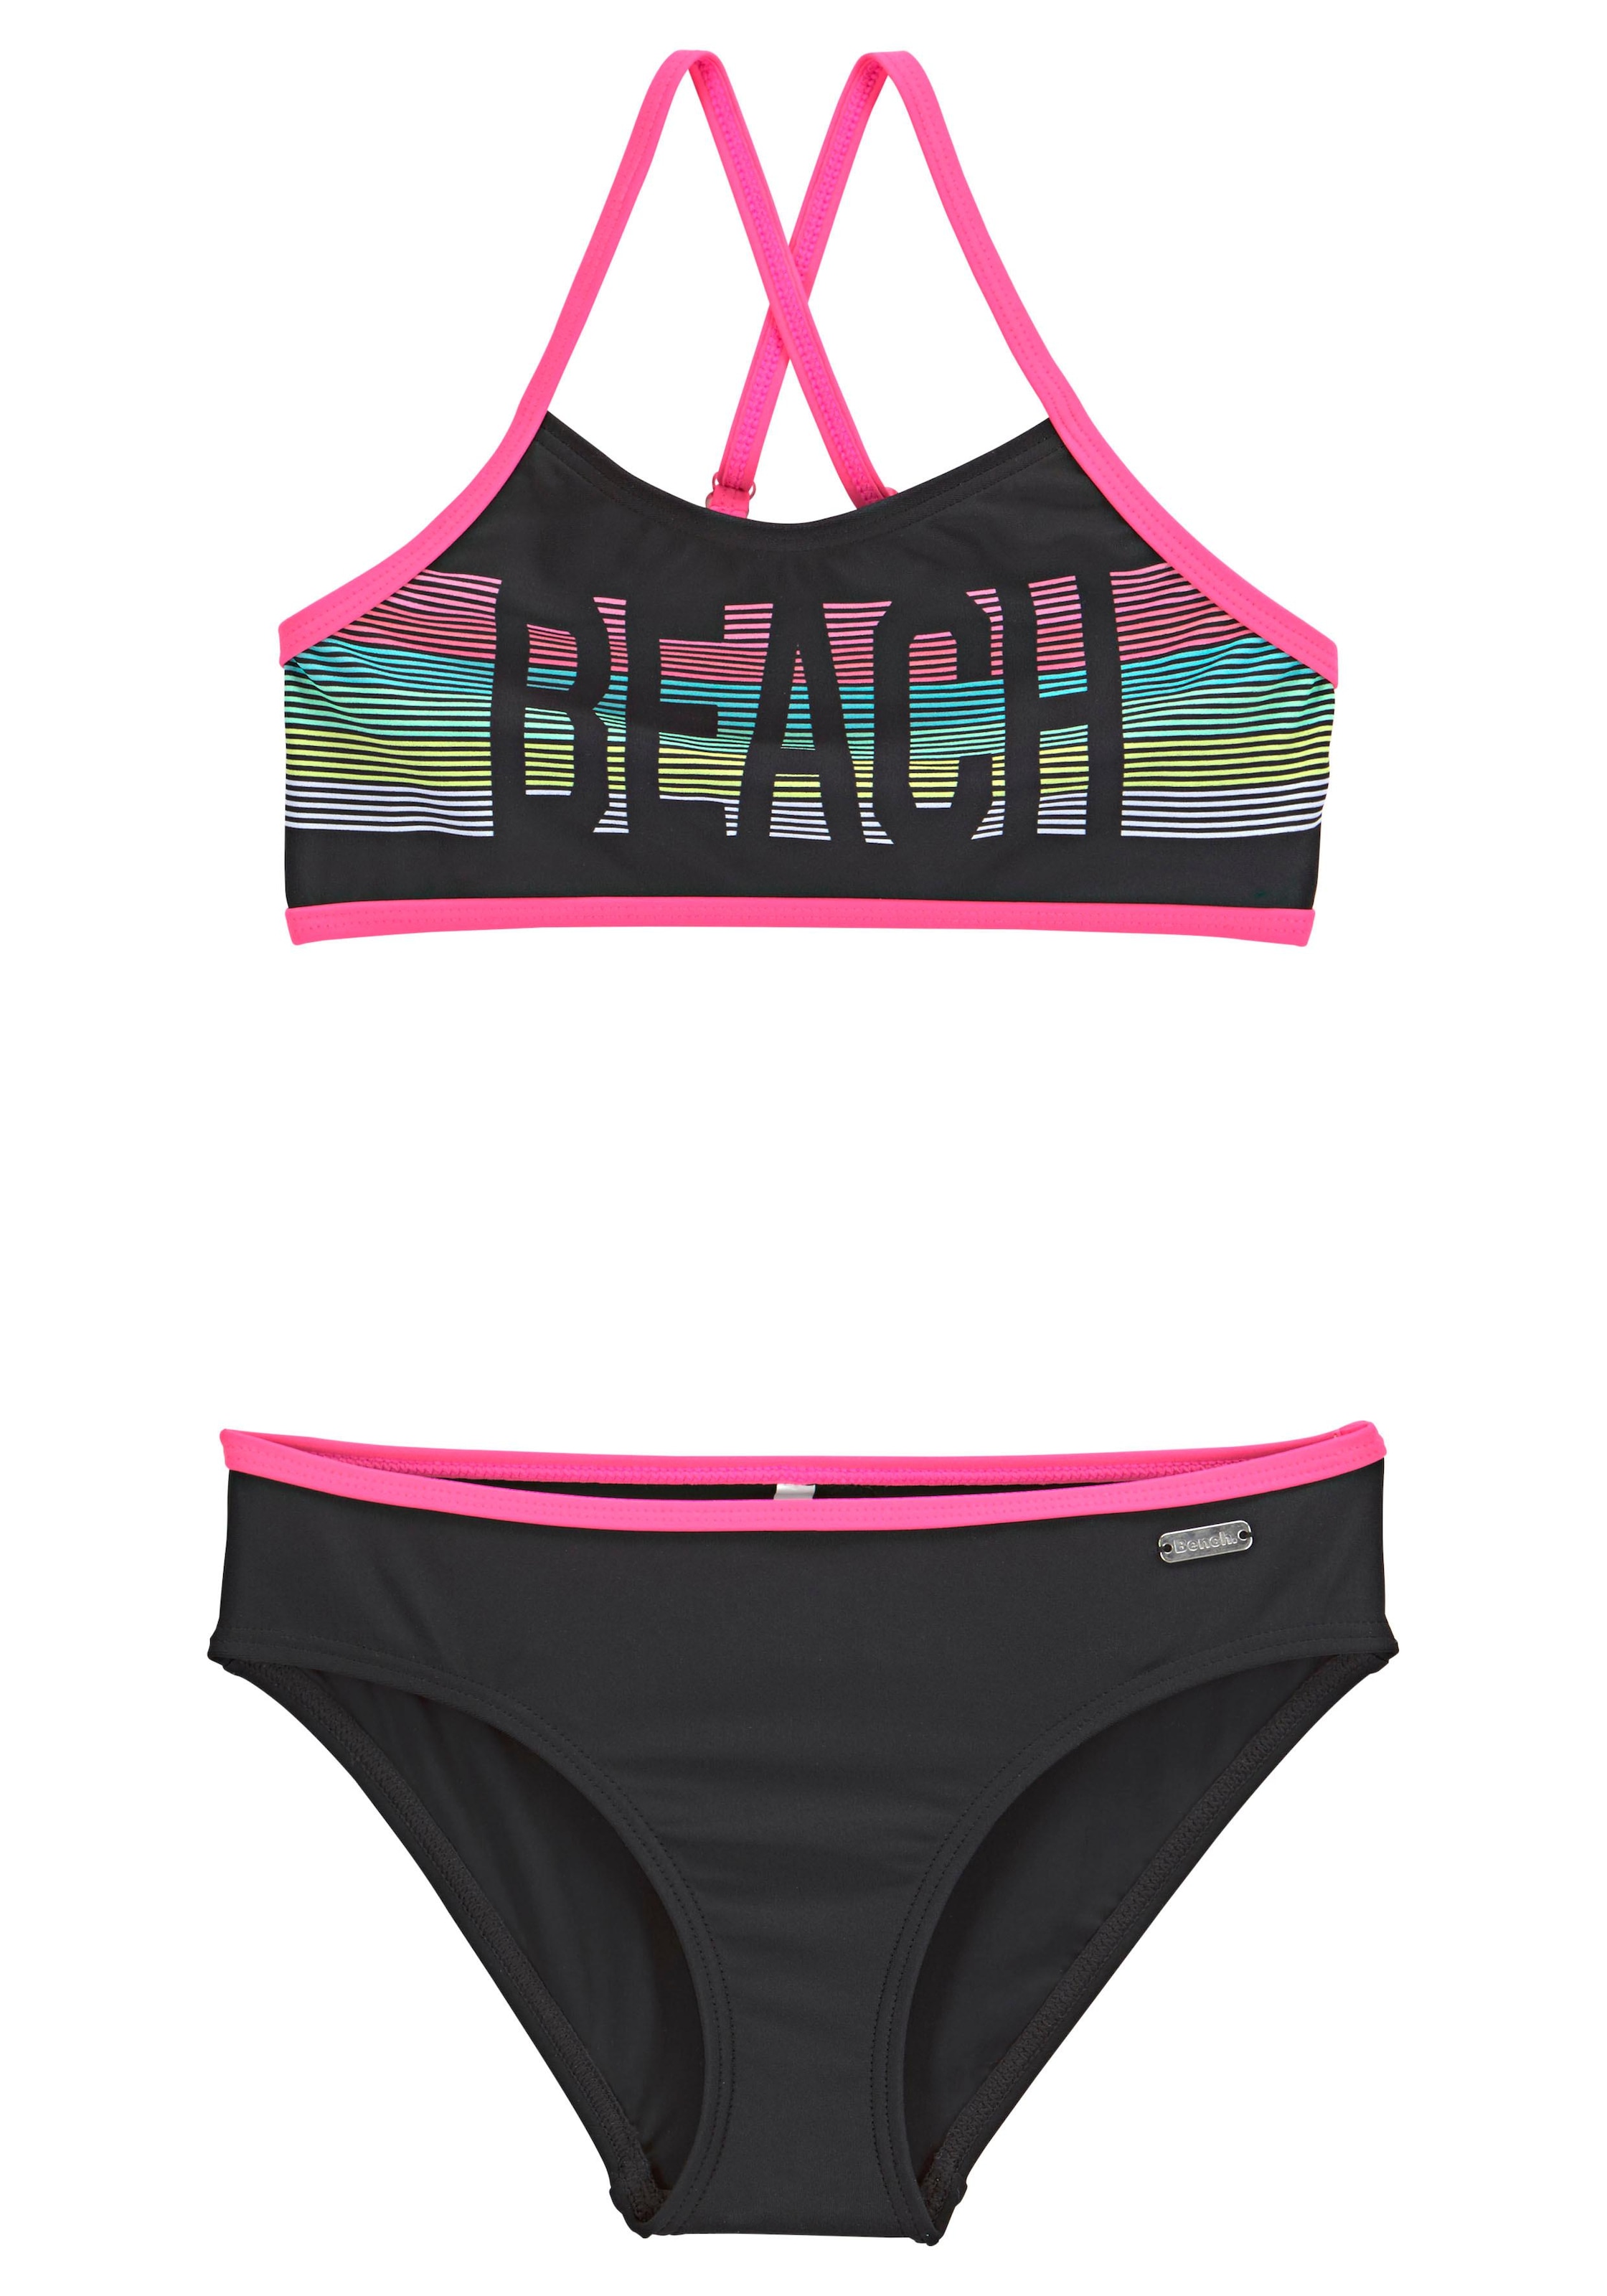 OTTO Kontrastpaspeln pinken Bustier-Bikini, bei Bench. online mit